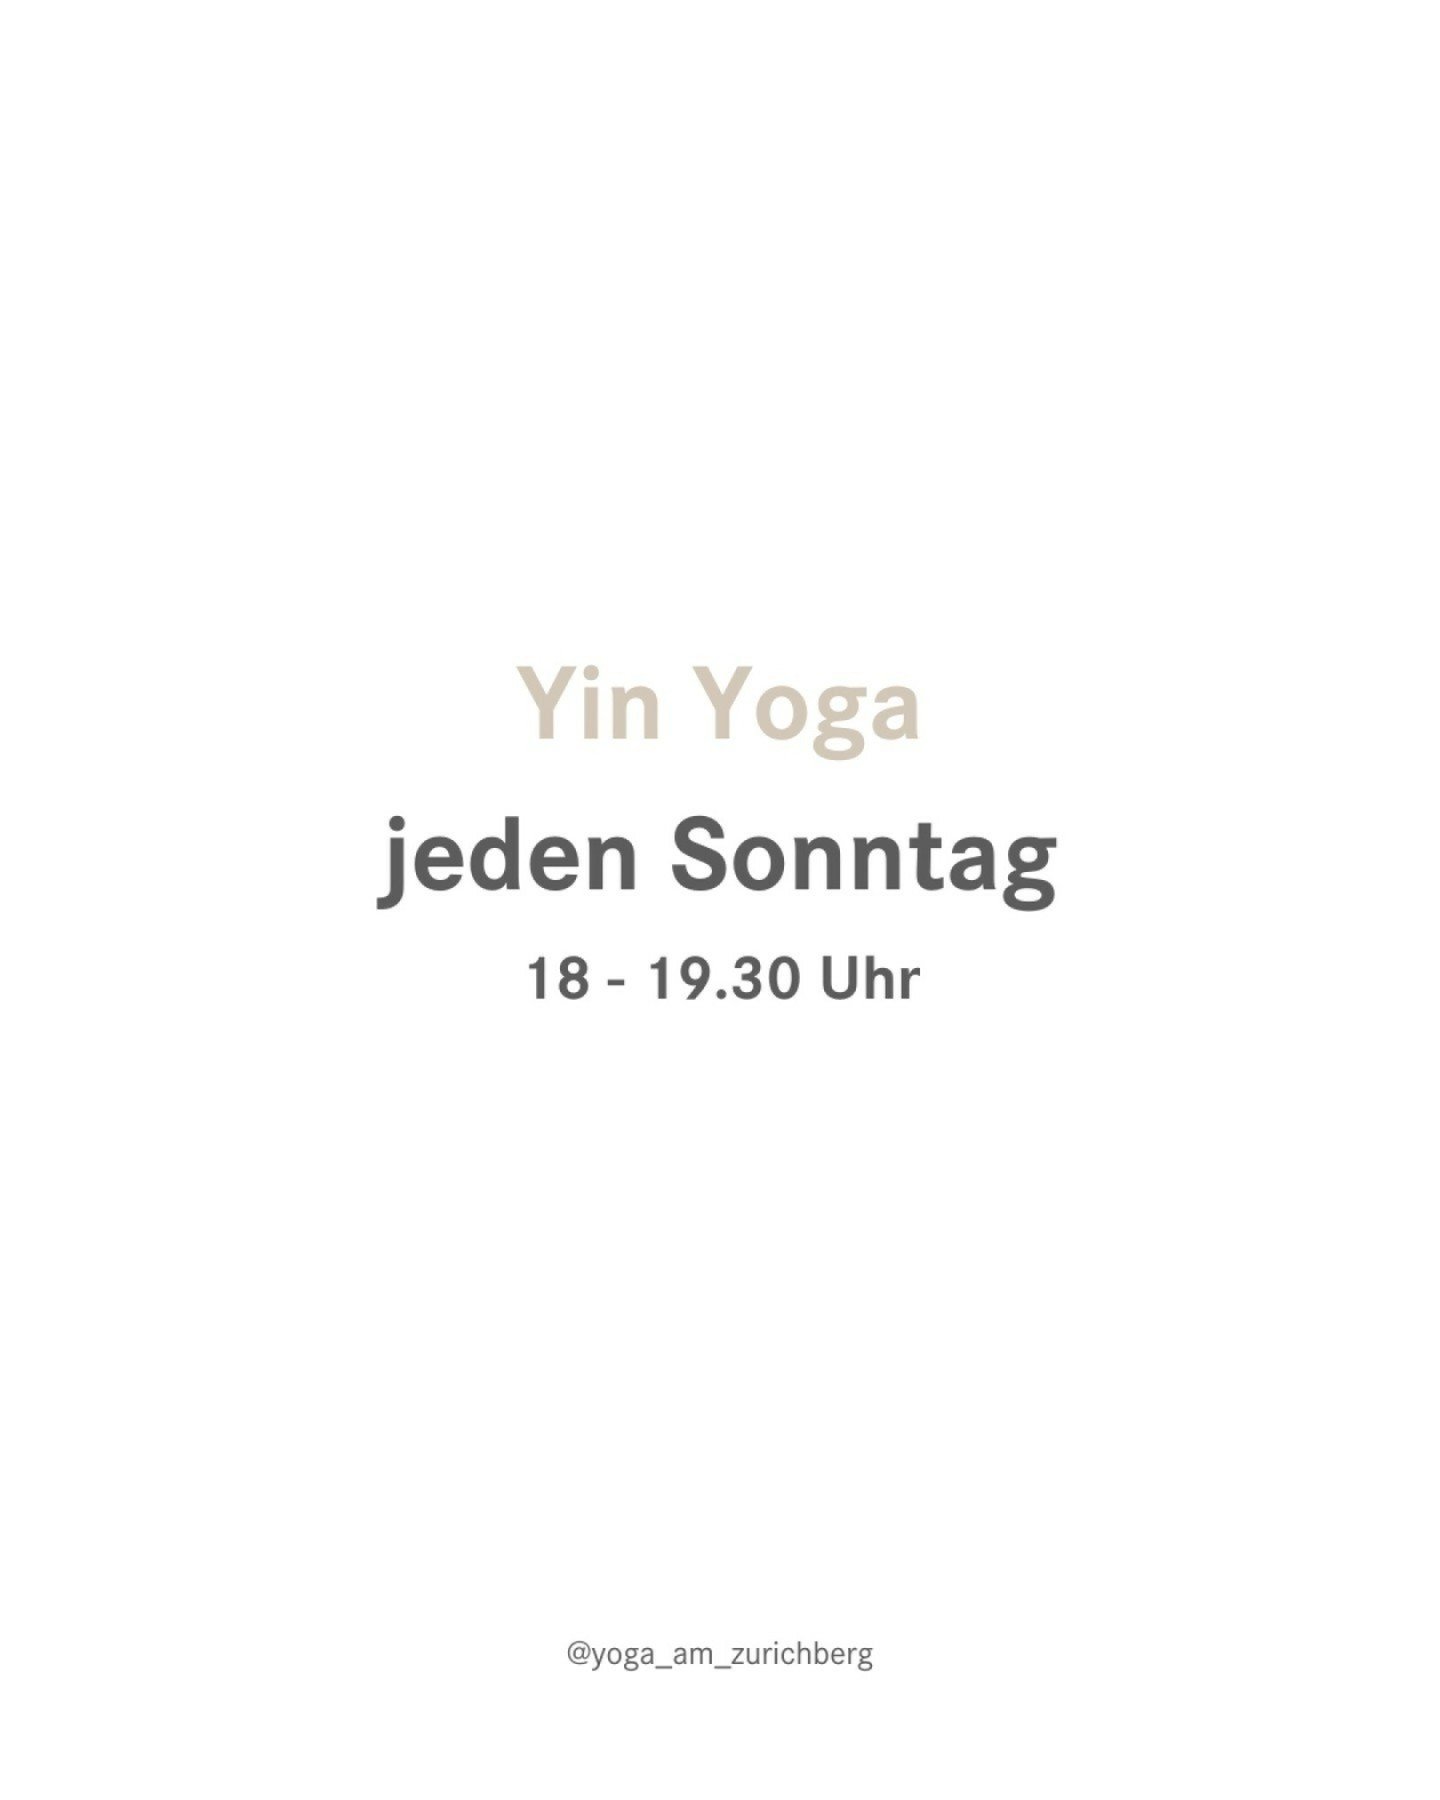 Tauche ein in eine andere Welt des Yoga - dem Kontrastprogramm vom klassischen Hatha Yoga

Yin Yoga
jeden Sonntag
18 - 19.30 Uhr 
mit Andrea @acristinar

*
*
*
*
*
#z&uuml;rich #yogastudio #yogaworkshopzurich #yogainspiration #yogamom #yogacomunityzu